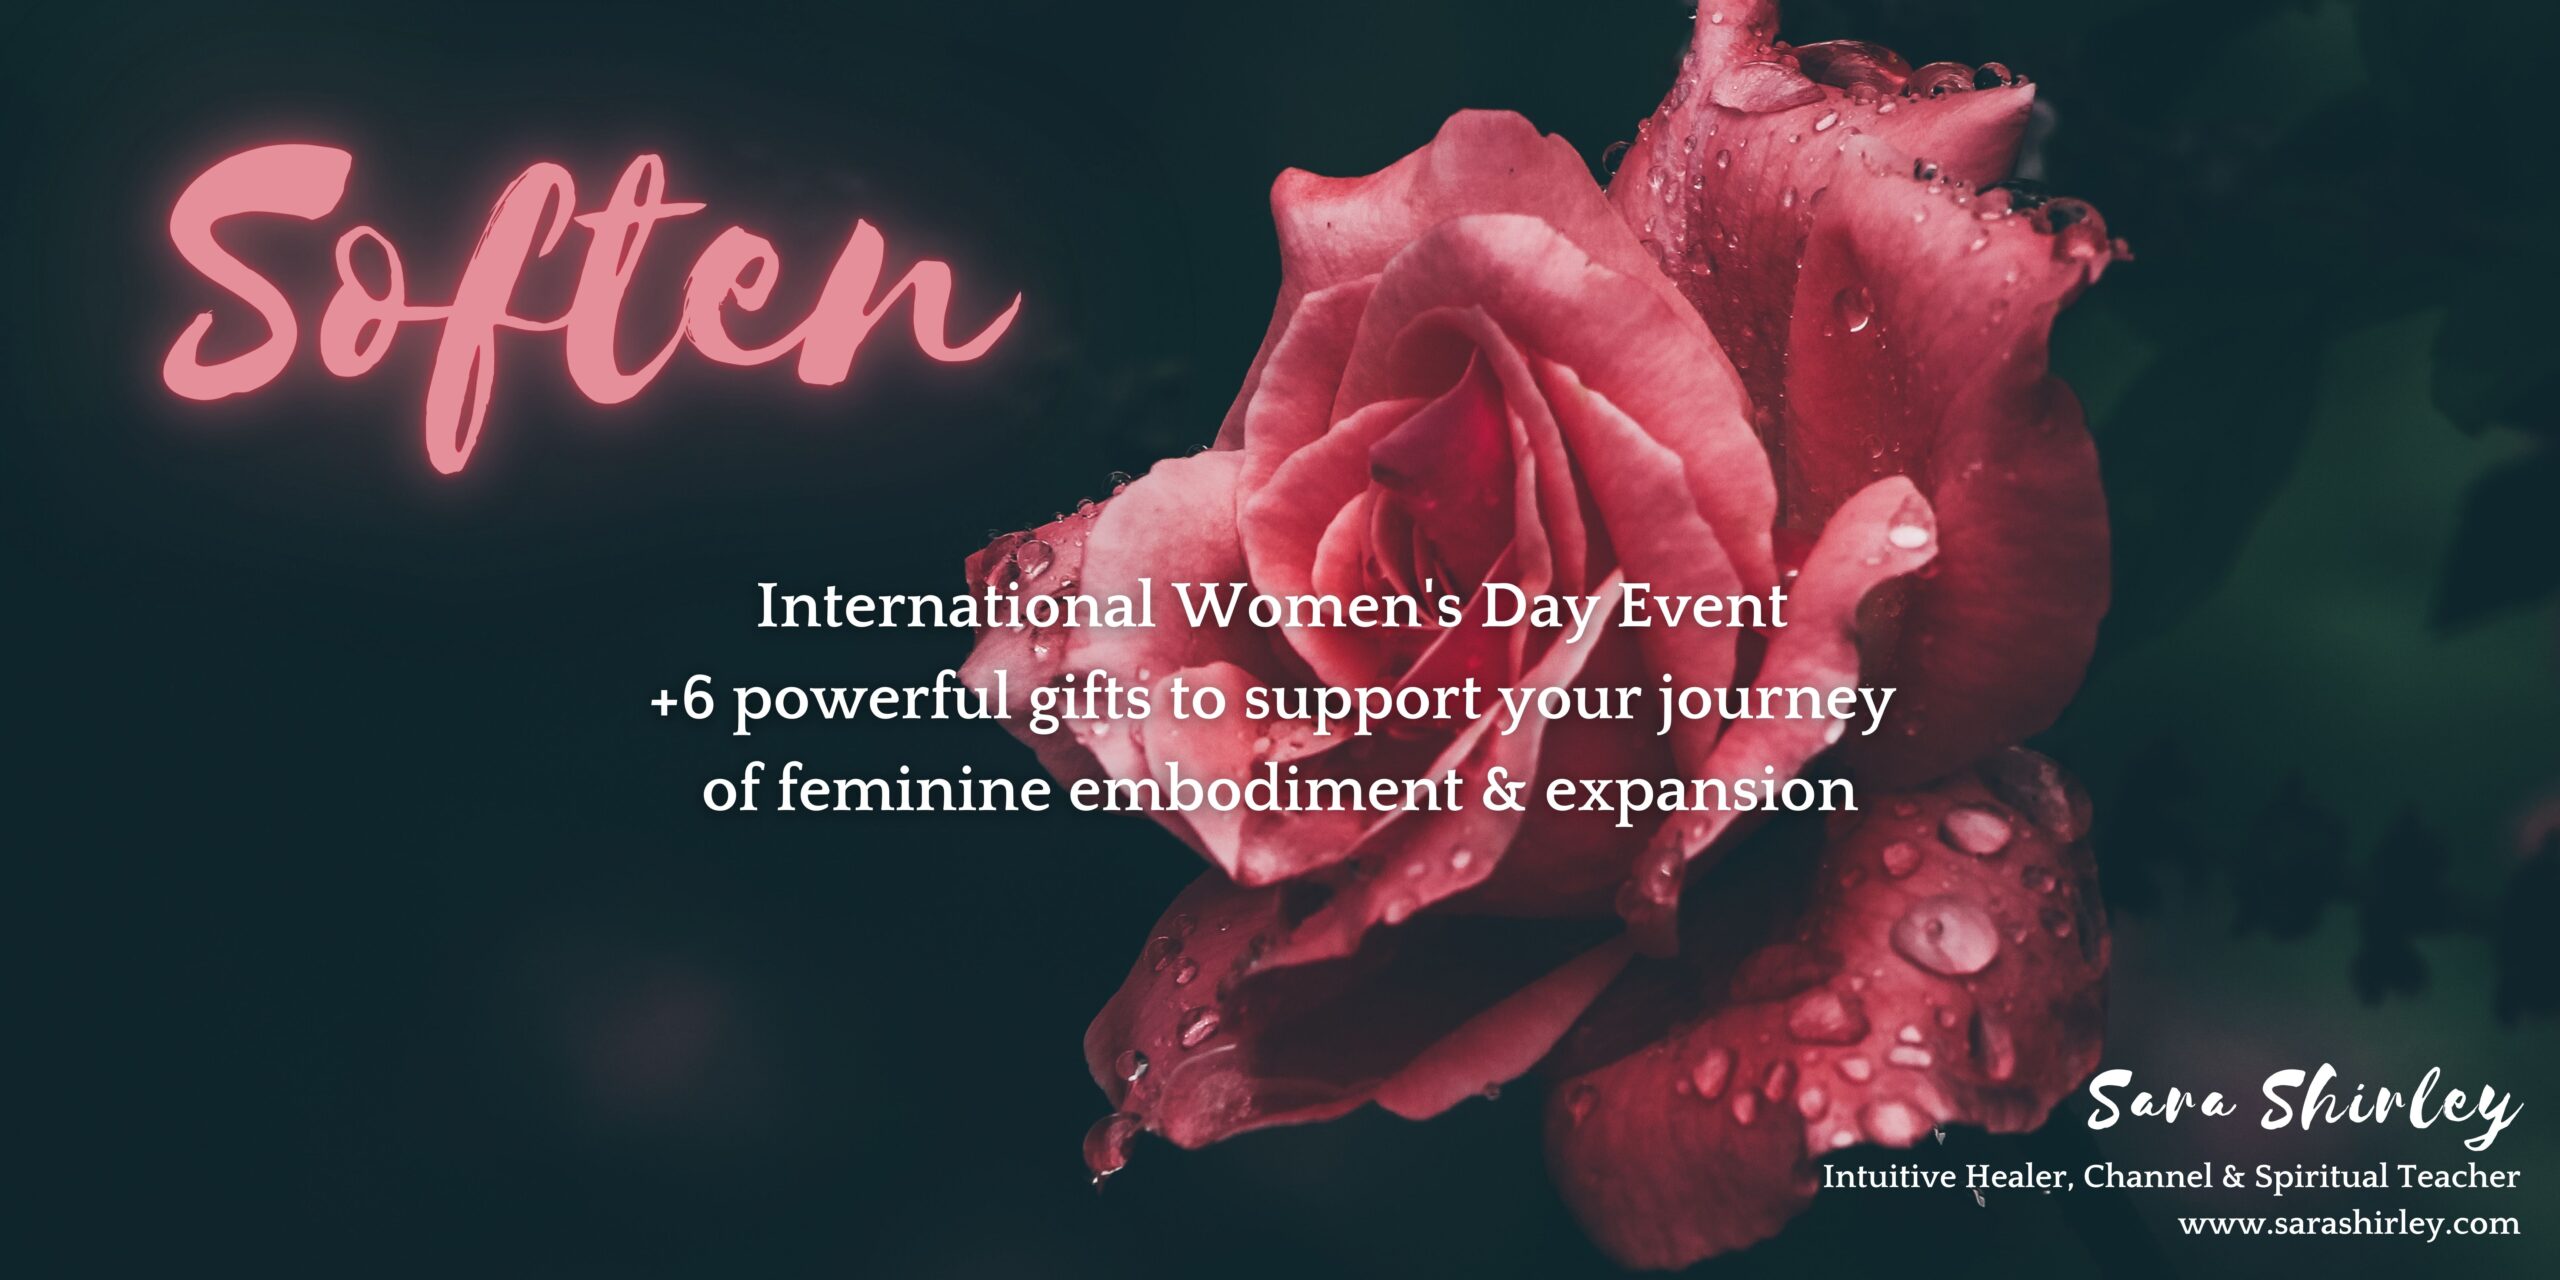 Sara Shirley Soften event upgrade international women's day feminine empowerment